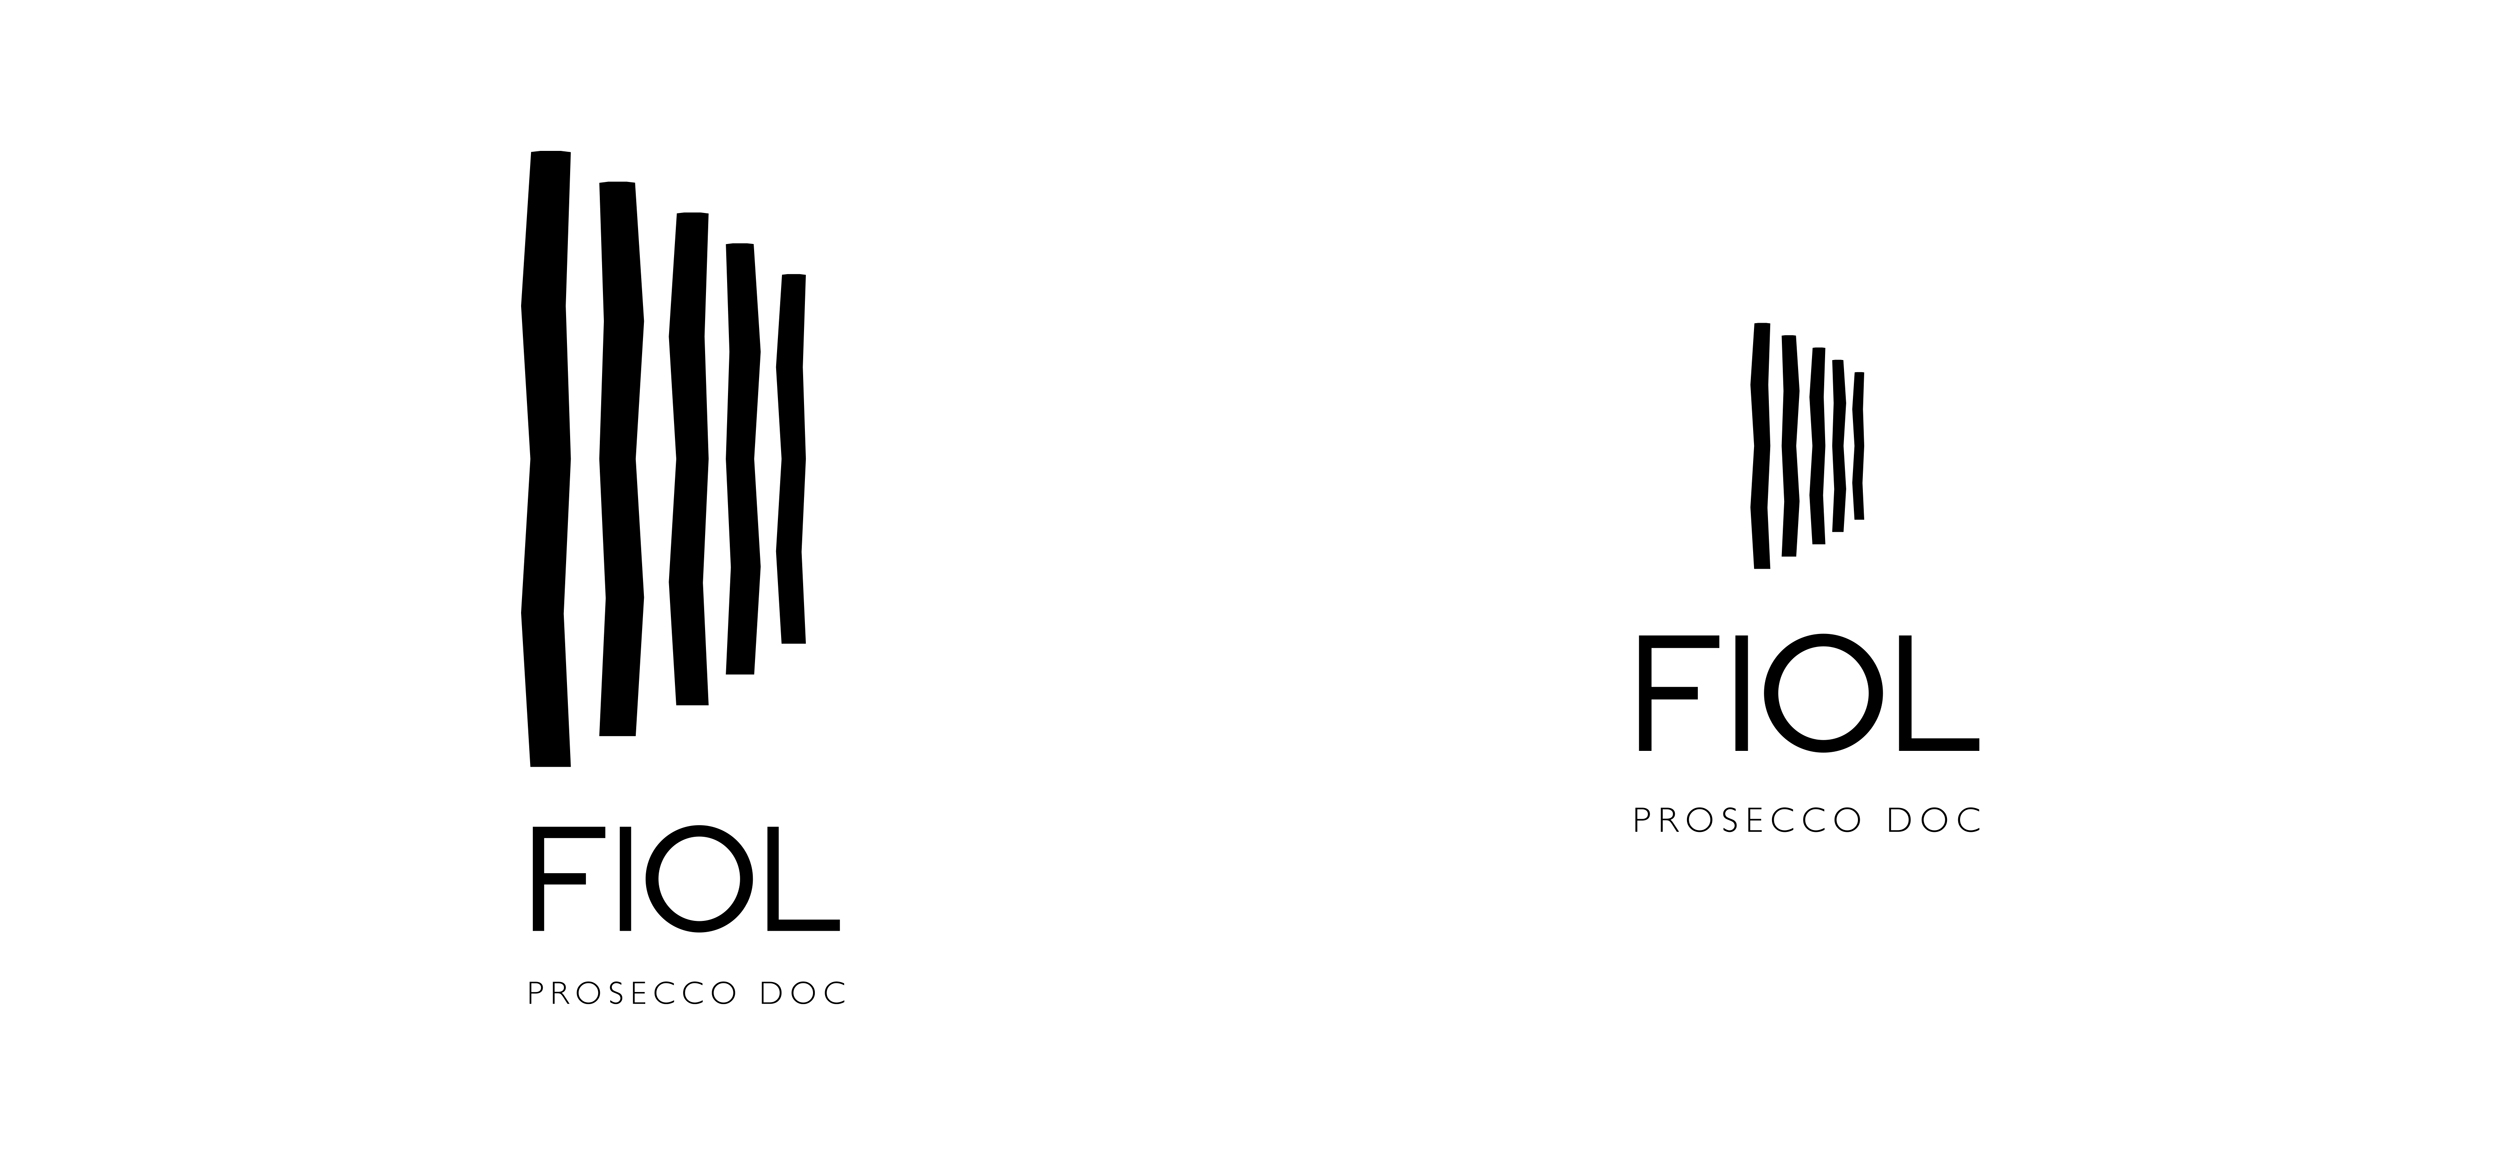 Logo_Prosecco_Fiol_Audric_Dandres_Plus_Minus_Brand_Identity_02